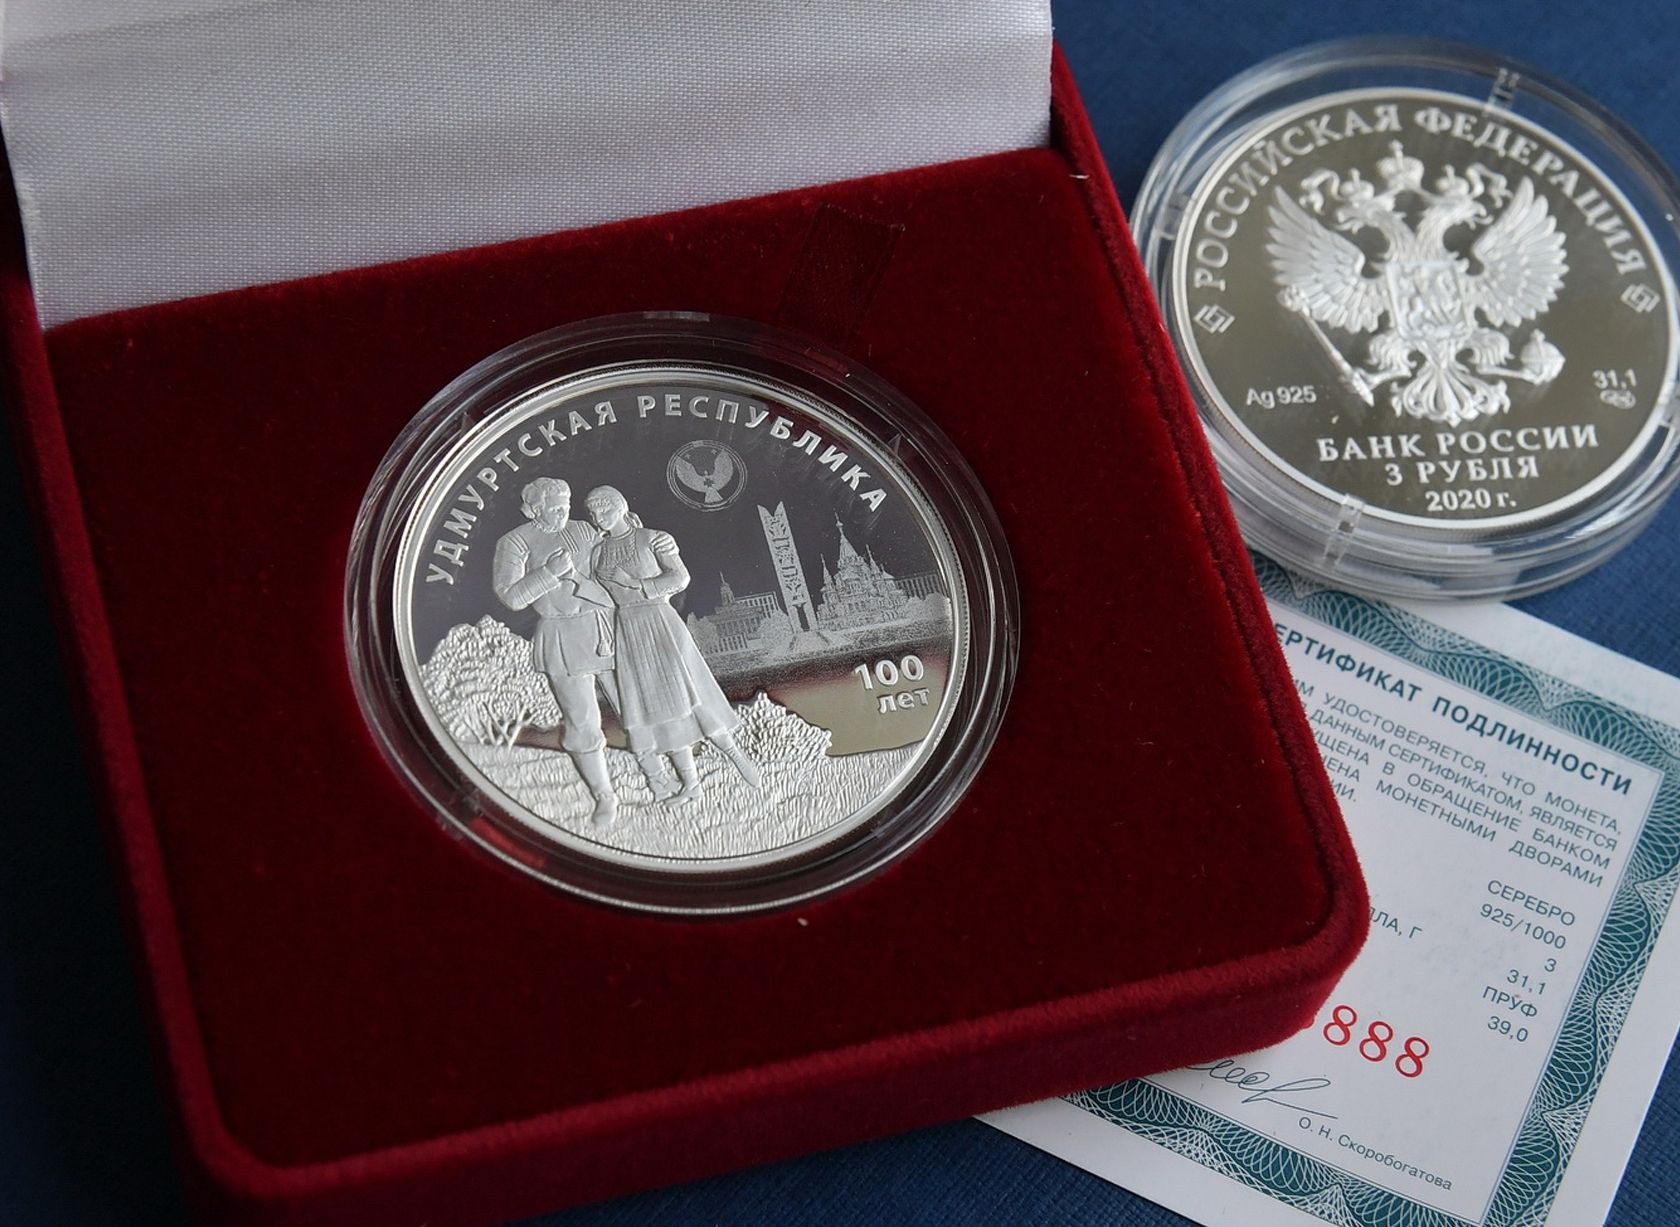 

В Удмуртии запустили в продажу монеты к 100-летию государственности

